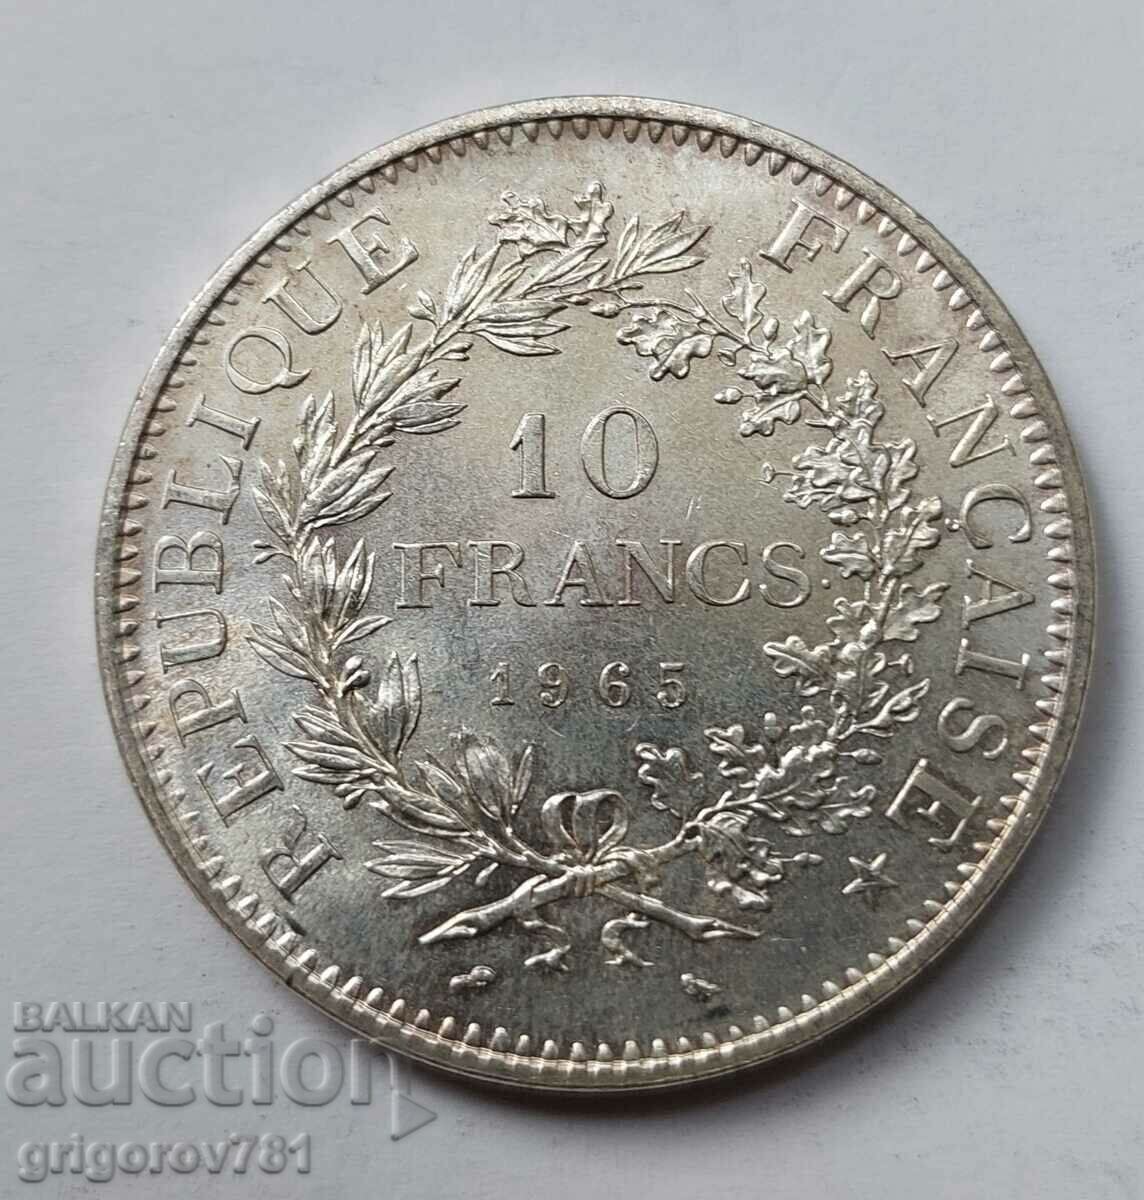 10 Franci Argint Franta 1965 - Moneda de argint #48